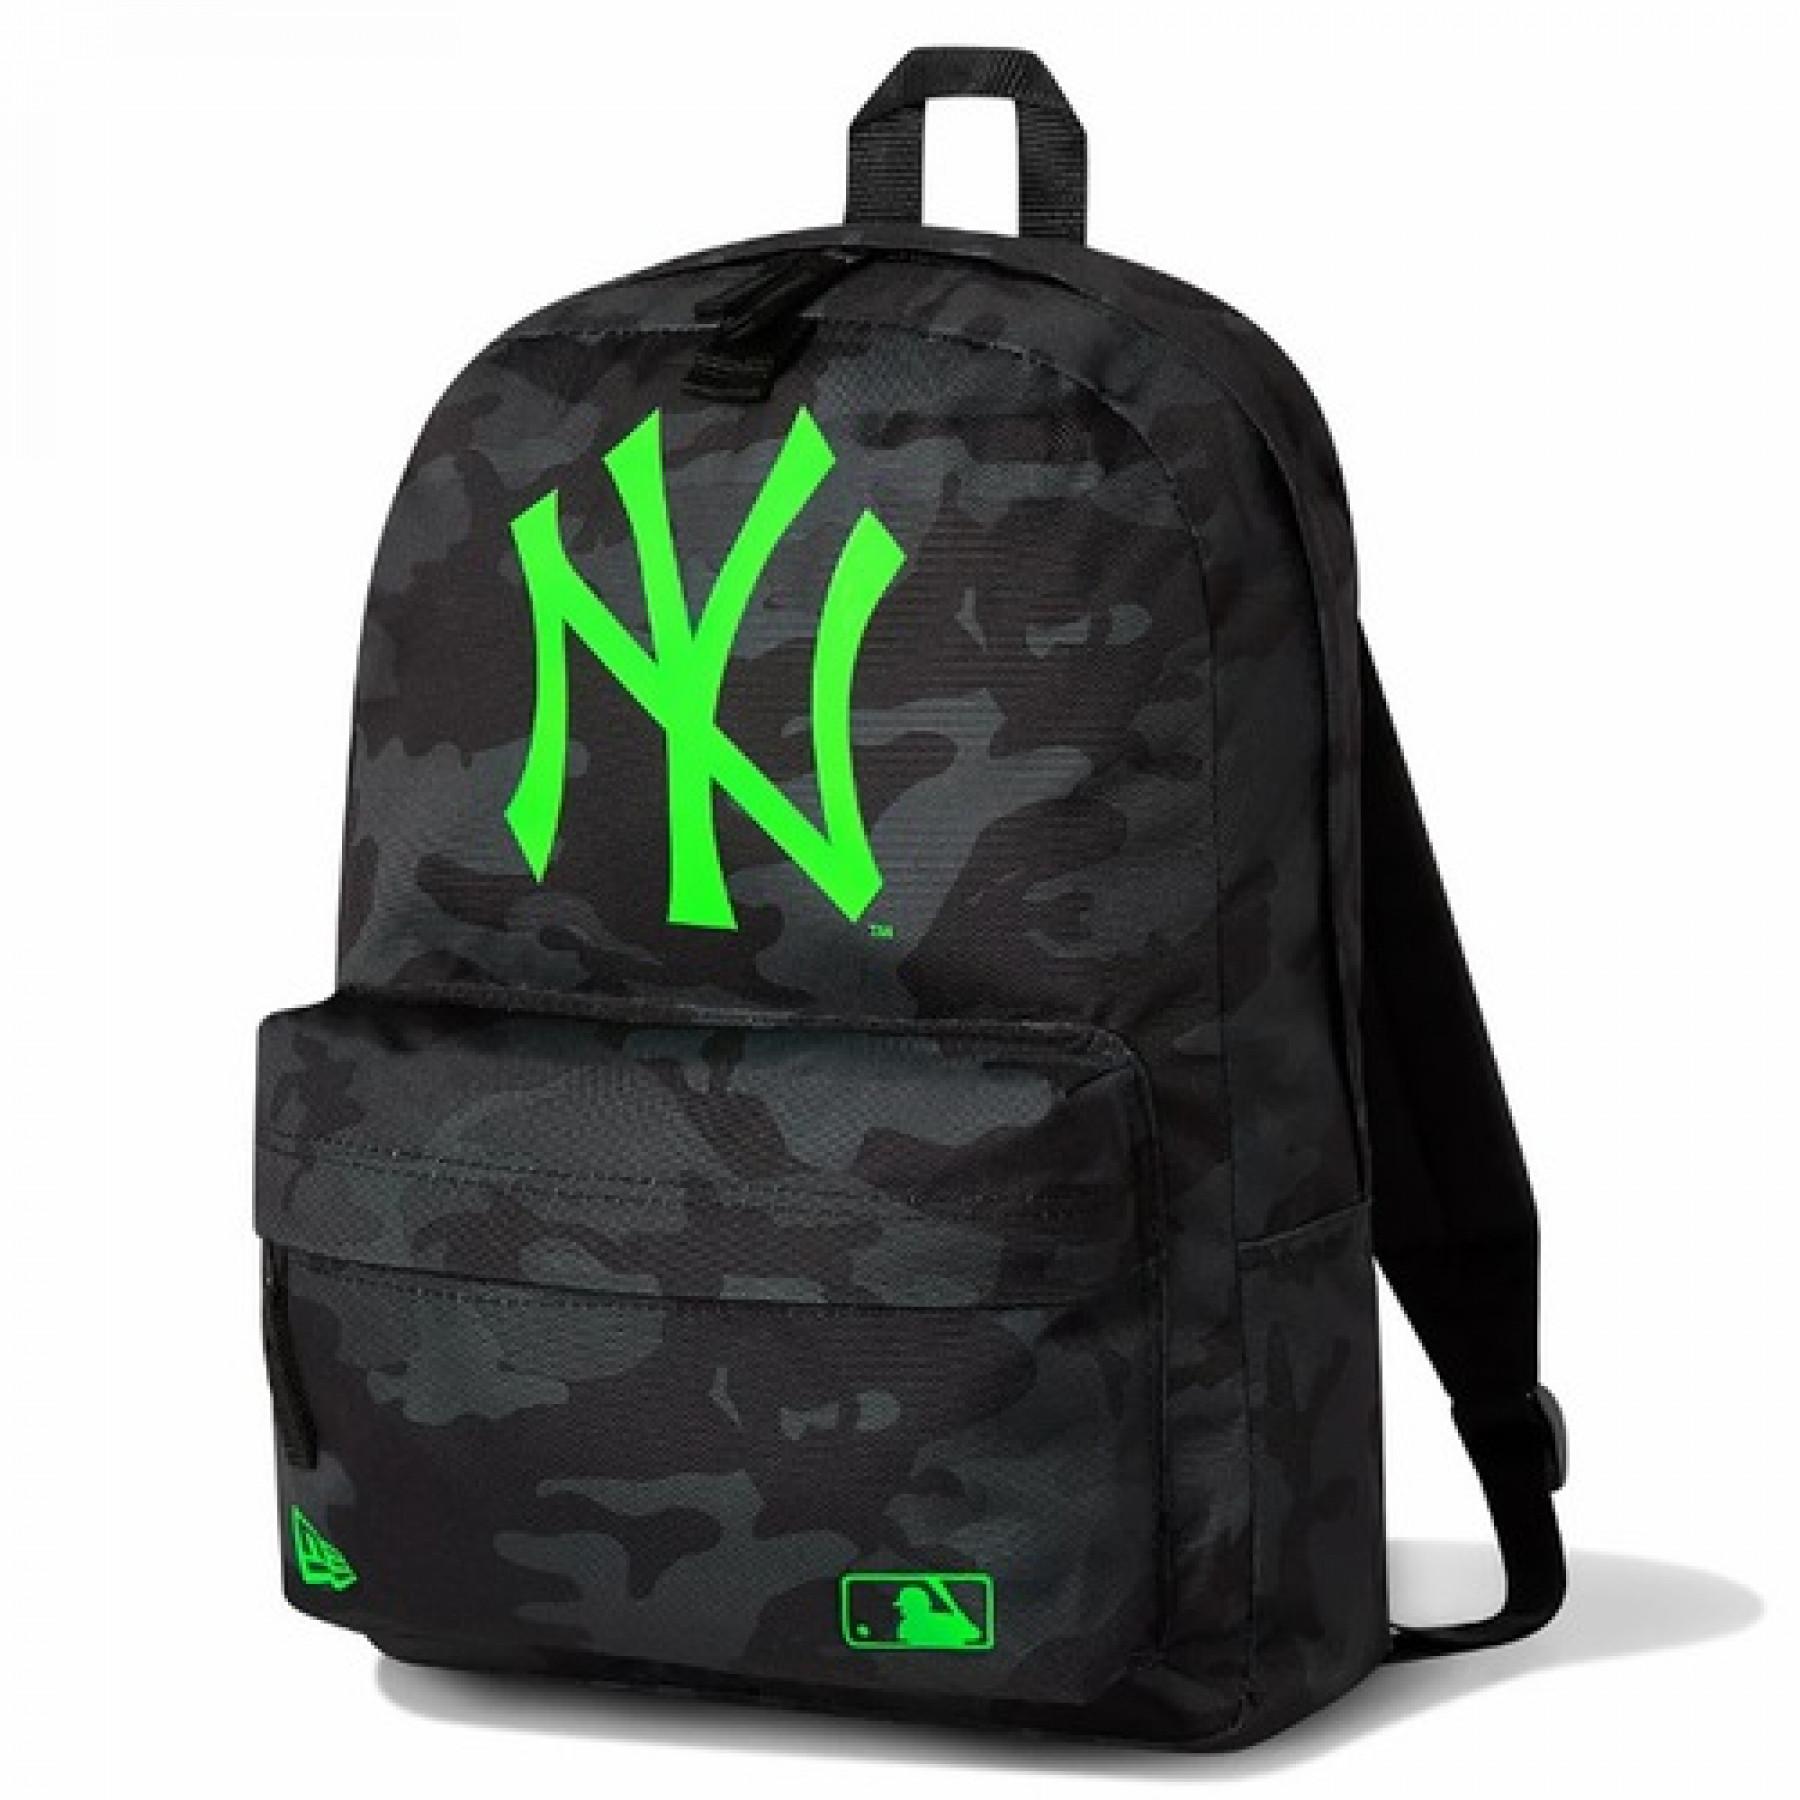 Sac dos New Era MLB Stadium New York Yankees - Luggage - Equipment - Running